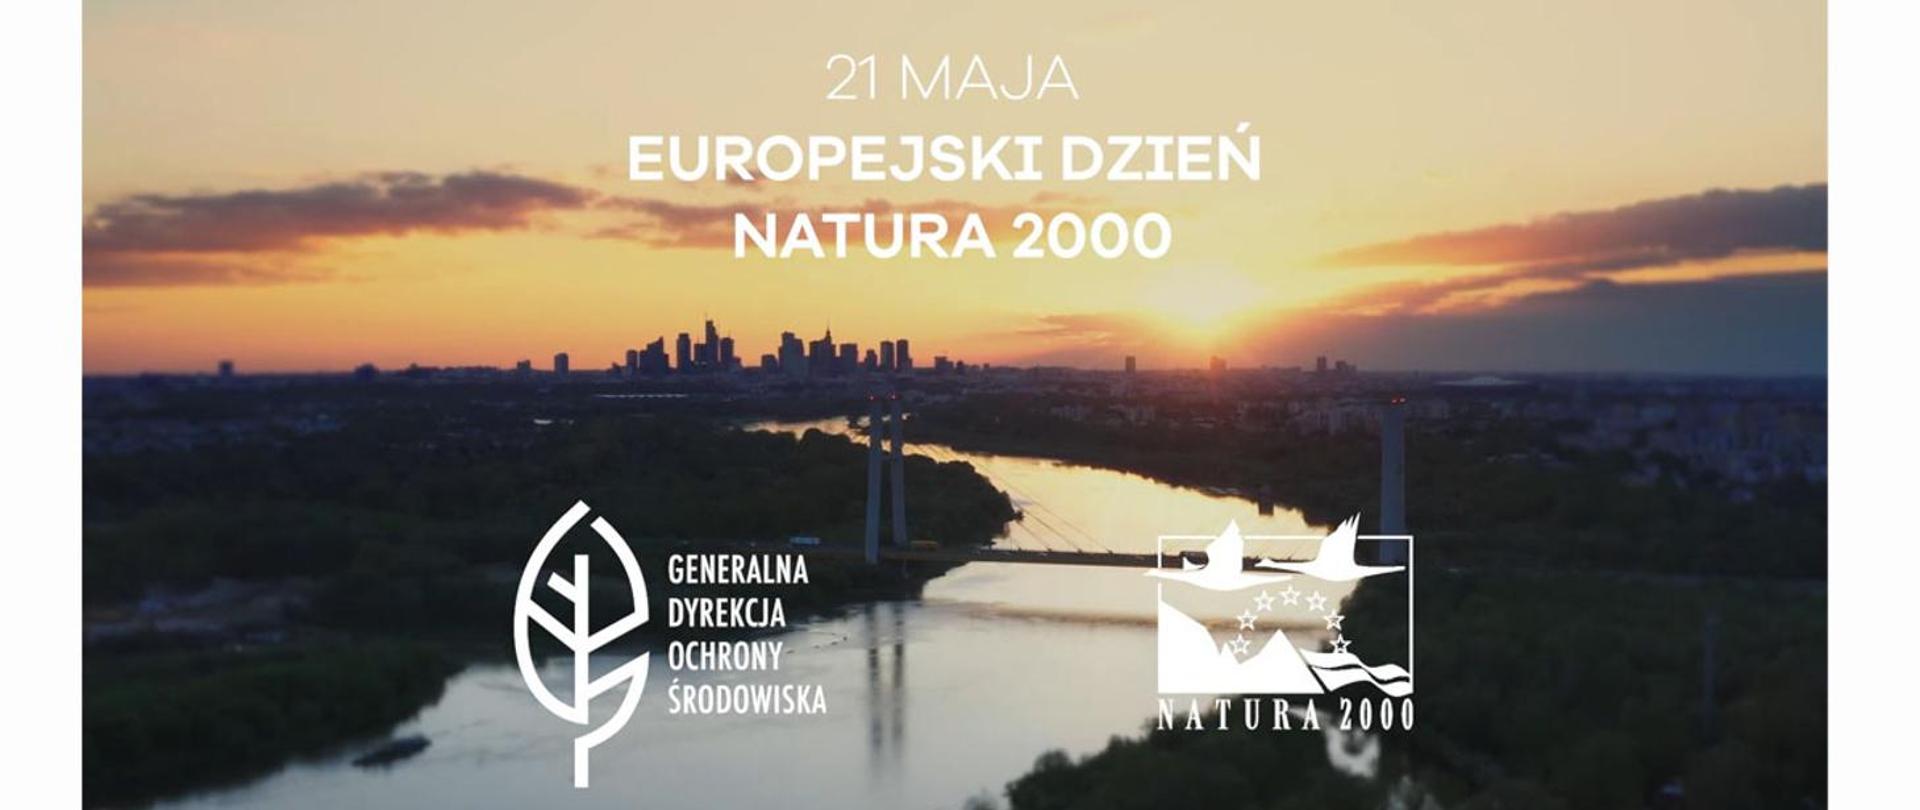 Zdjęcie przedstawia krajobraz -widok na Warszawę, w środku płynie Wisła, w górnej części zdjęcia napis: 21 maja - Europejski Dzień Natura 2000, w dolnej części logo GDOŚ i sieci Natura 2000